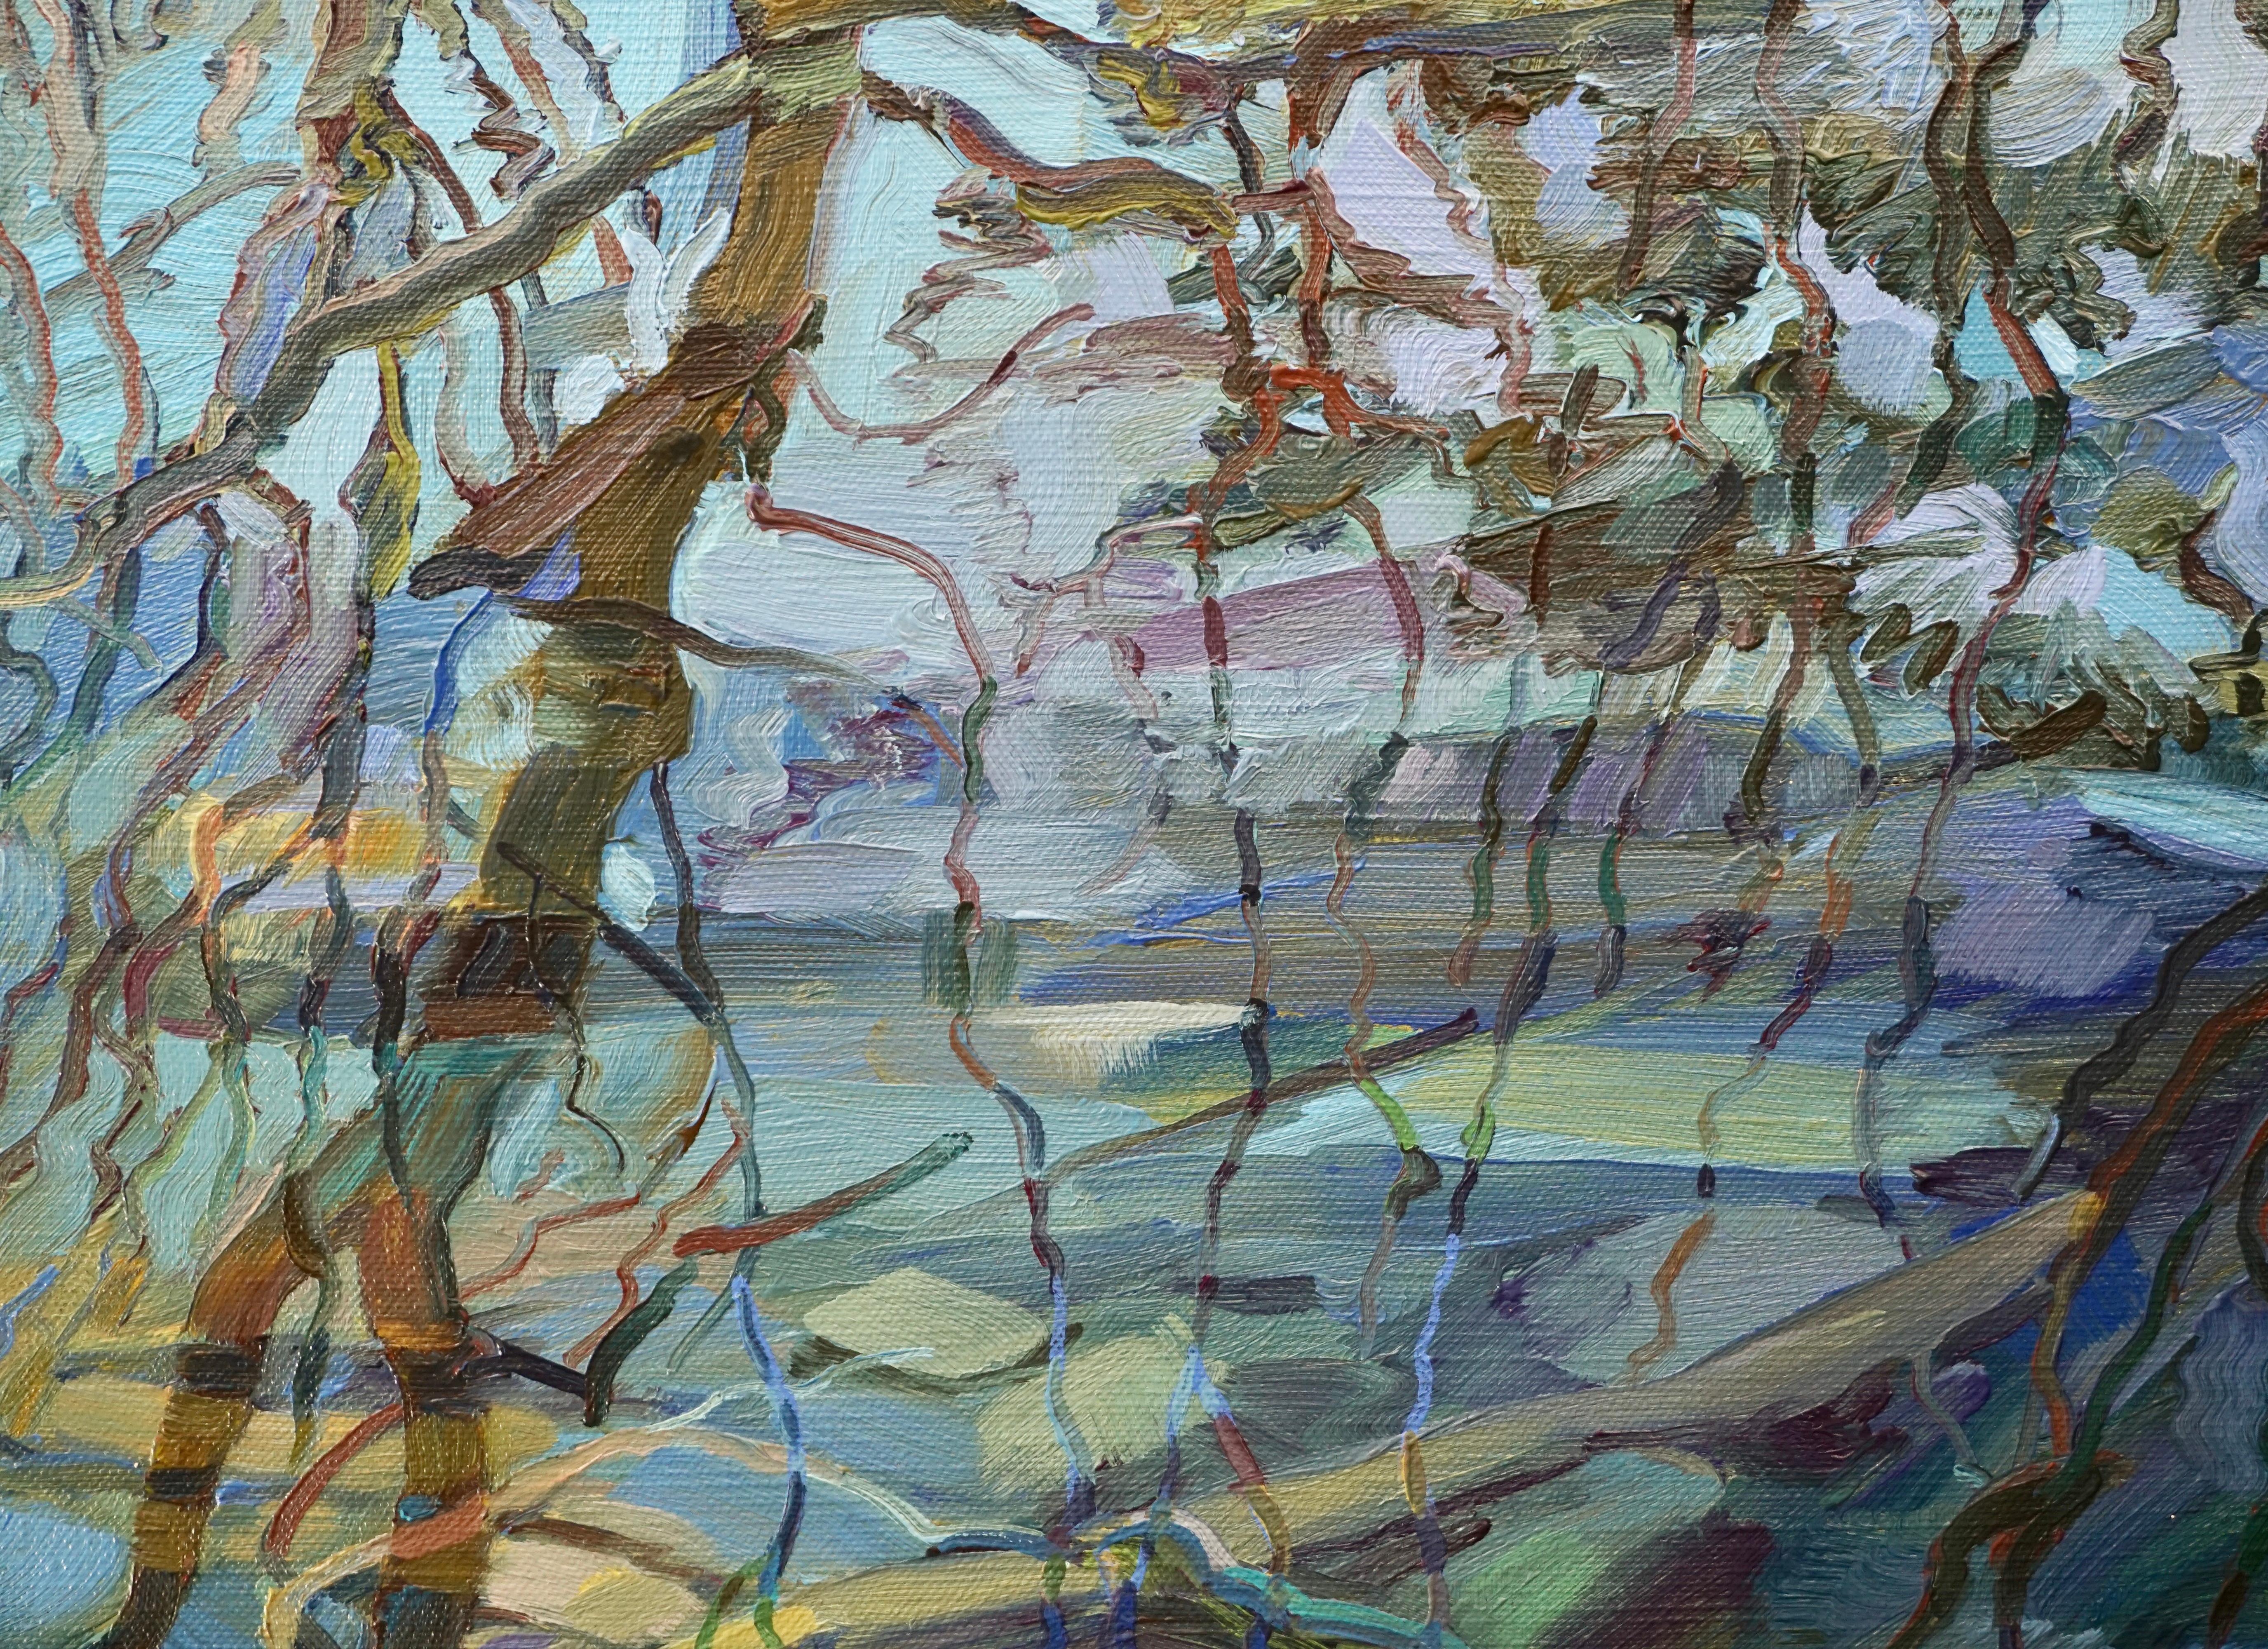 Stanley Sporny (Amerikaner 1946 - 2008) Ein Blick in einen Bach mit überhängenden Ästen, die sich im Wasser spiegeln.  Ein wunderschönes Ölgemälde, das den Grund des Baches sowie die Zweige und den Himmel, die sich im Wasser spiegeln, erforscht.  